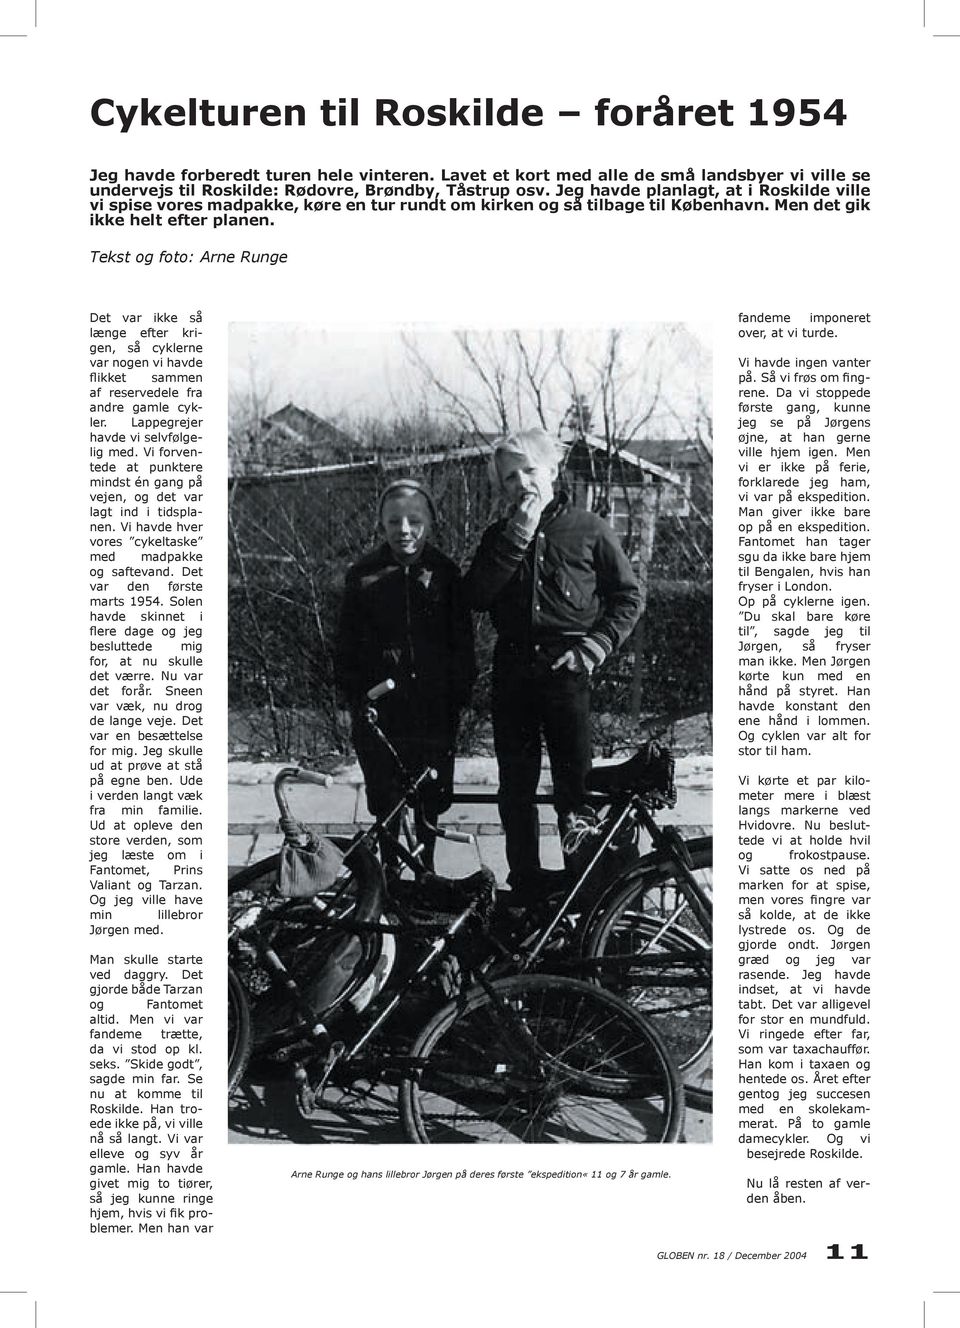 Tekst og foto: Arne Runge Det var ikke så længe efter krigen, så cyklerne var nogen vi havde flikket sammen af reservedele fra andre gamle cykler. Lappegrejer havde vi selvfølgelig med.